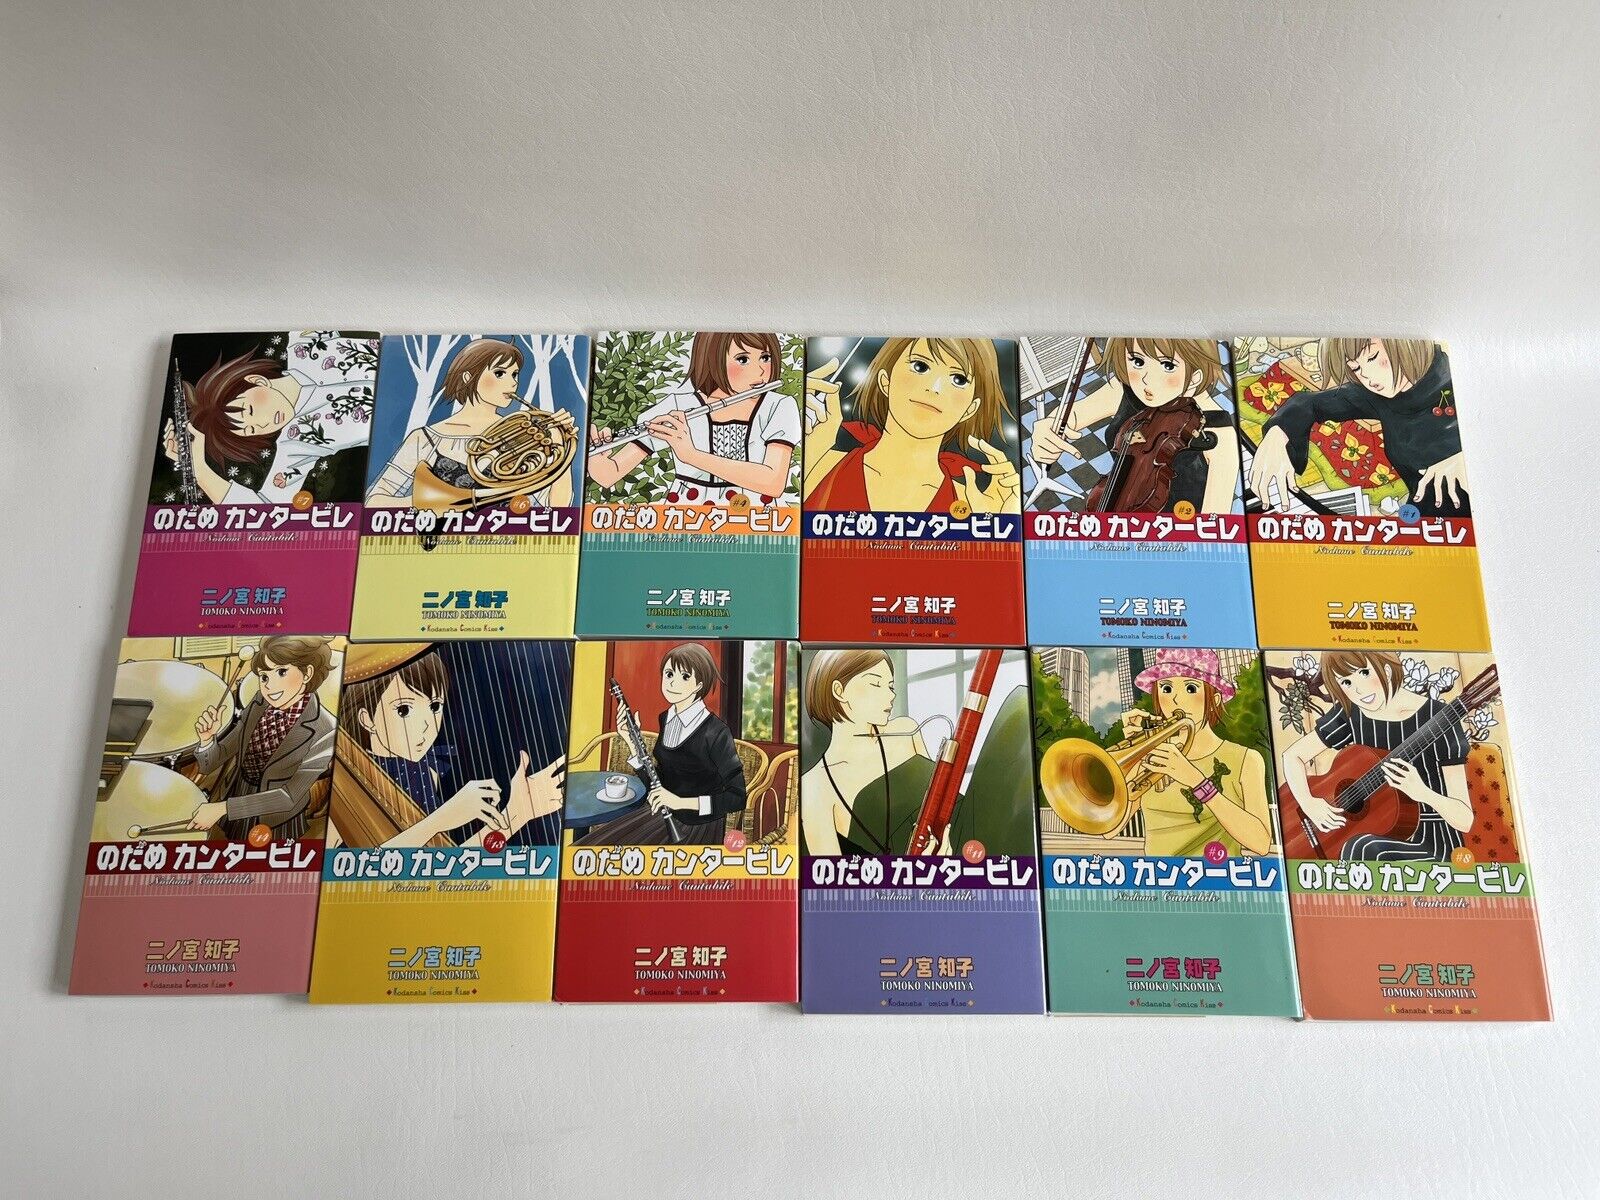 Nodame Cantabile Volumes 1-4, 6-9, 11-14 Japanese Language Manga Comics Ninomoya